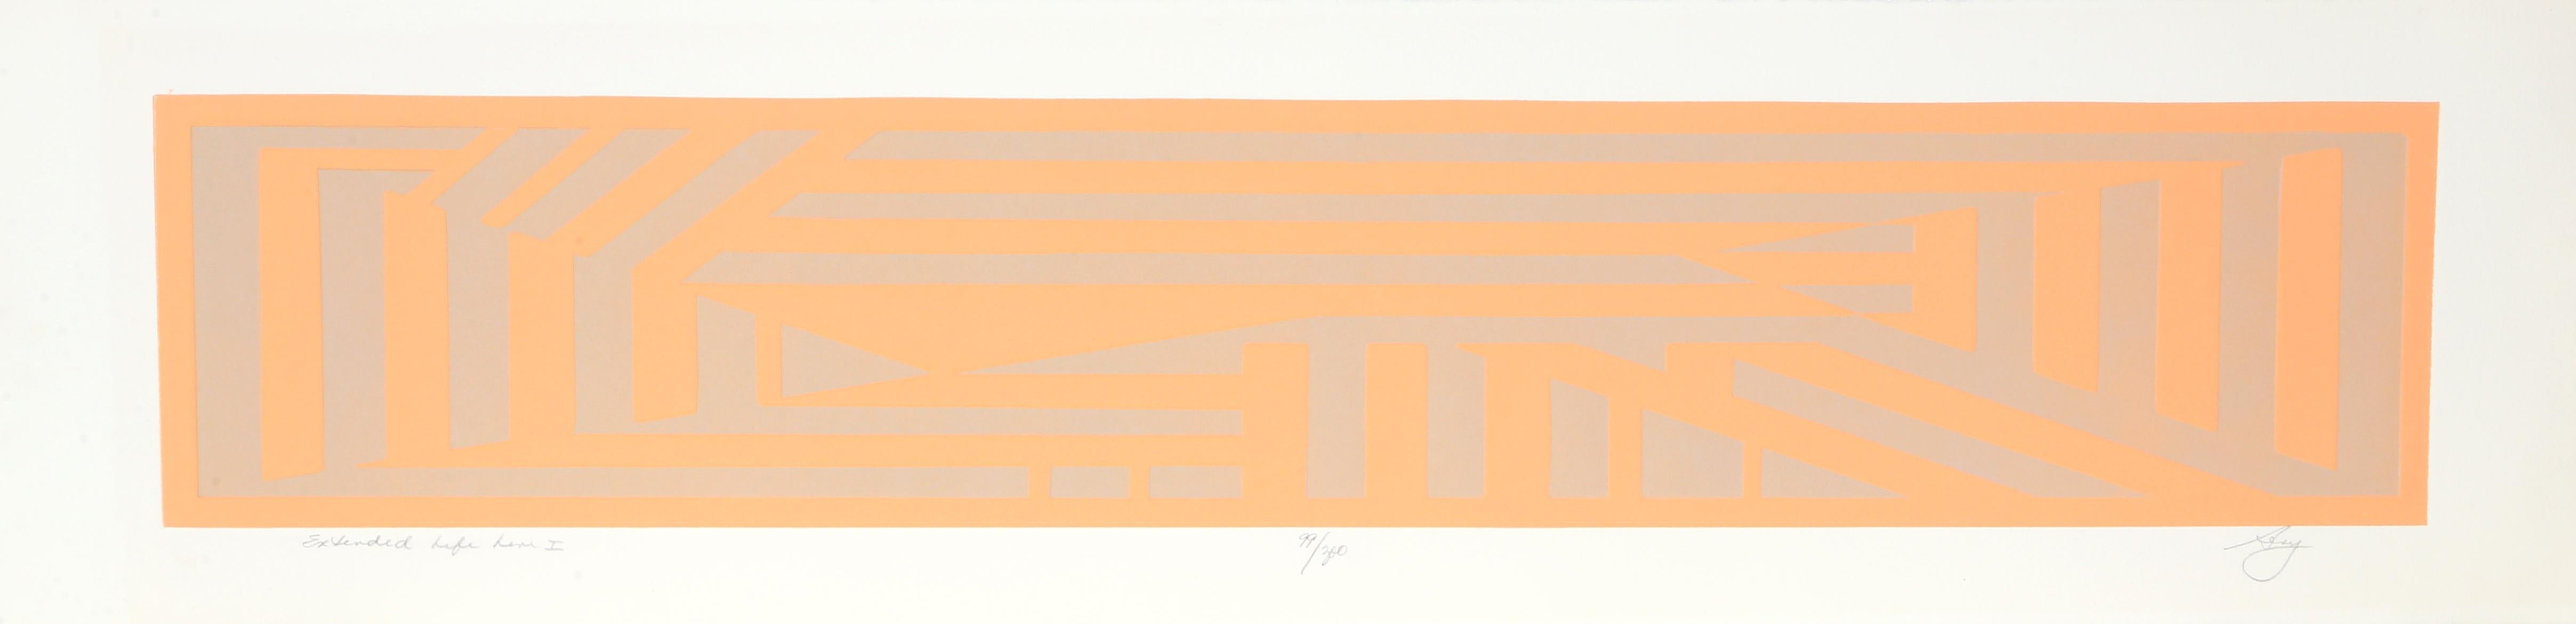 Artiste : Elen Sevy, américaine 
Titre : Ligne de vie prolongée I
Année : 1980
Médium : Gravure en couleur gaufrée, signée et numérotée au crayon
Edition : 300
Taille de l'image : 7 x 36.5 pouces 
Taille du papier : 10.5 x 42 in. (26,67 x 106,68 cm)